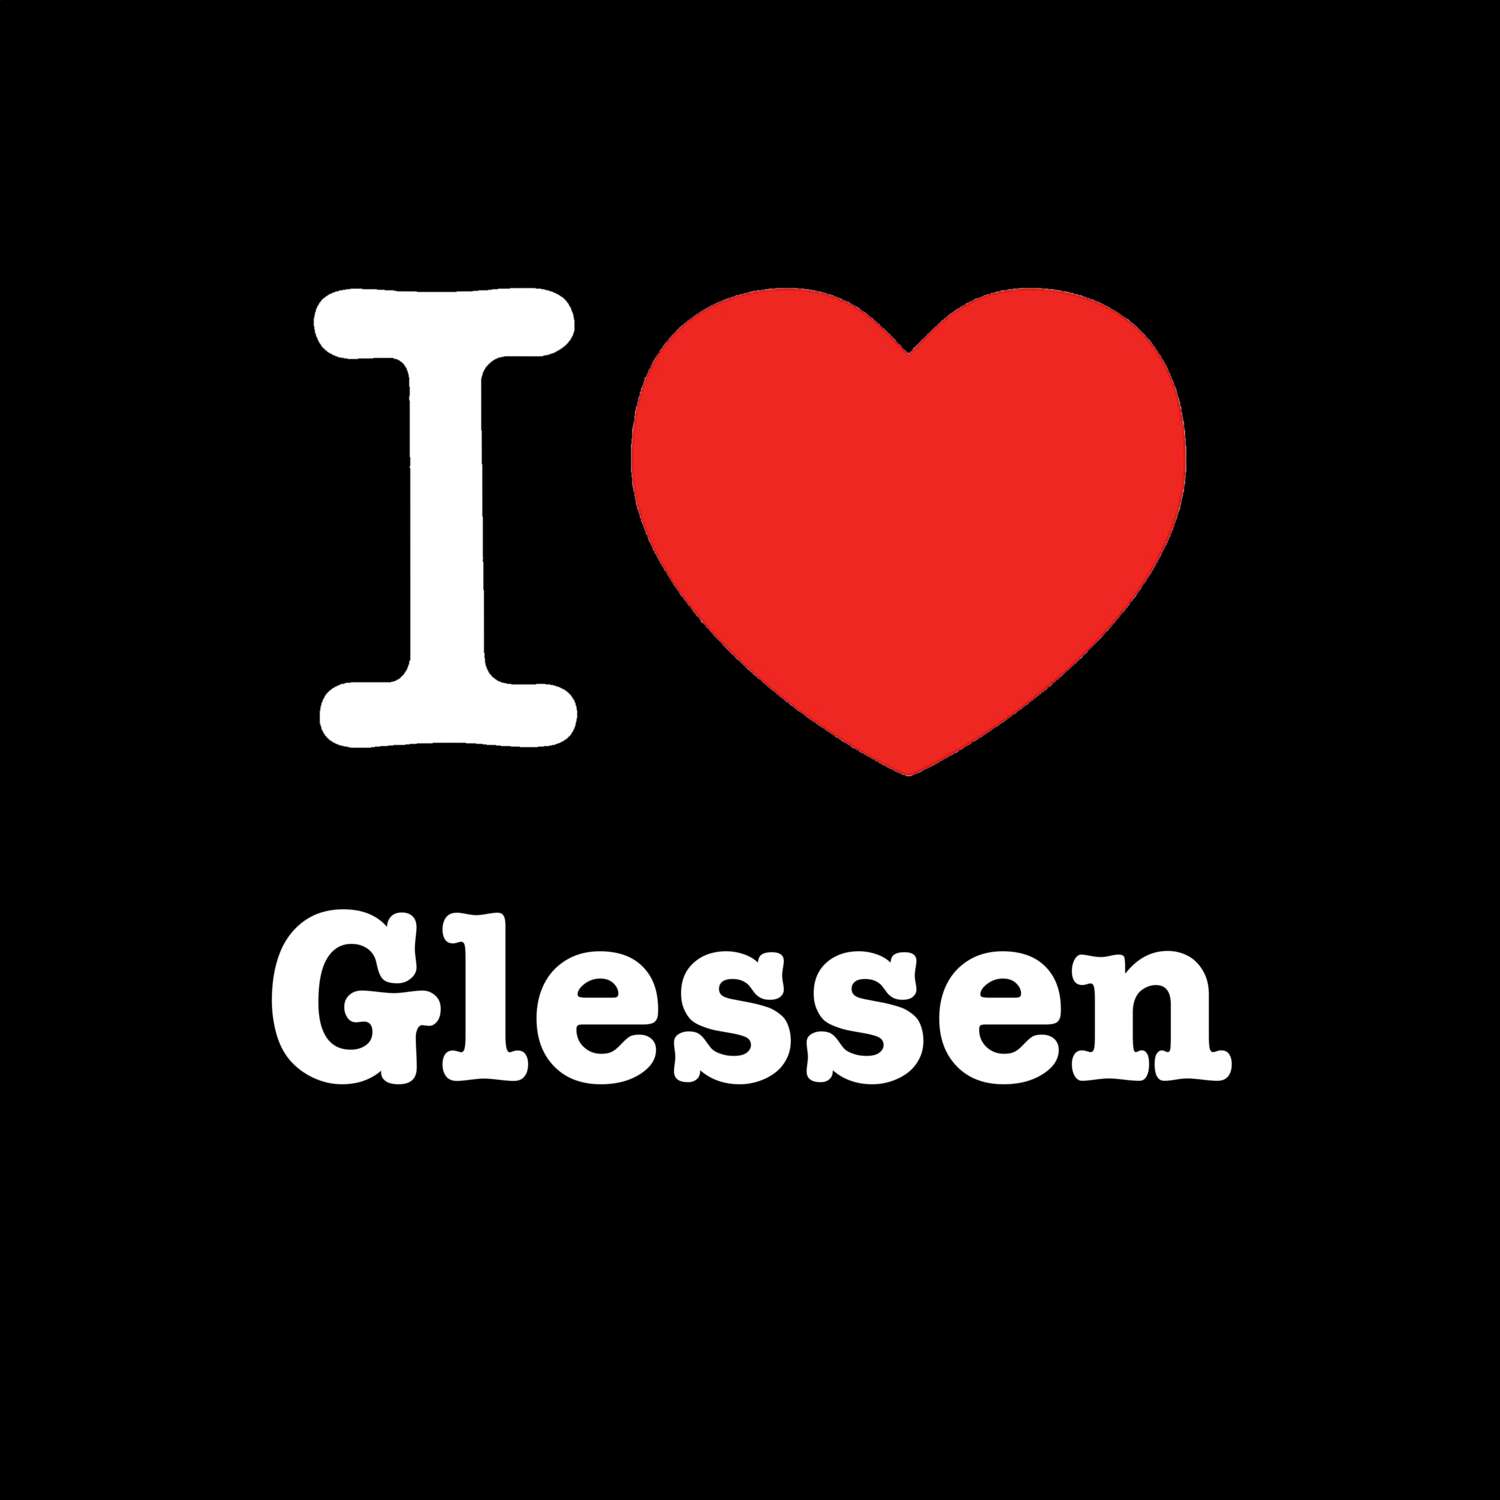 Glessen T-Shirt »I love«